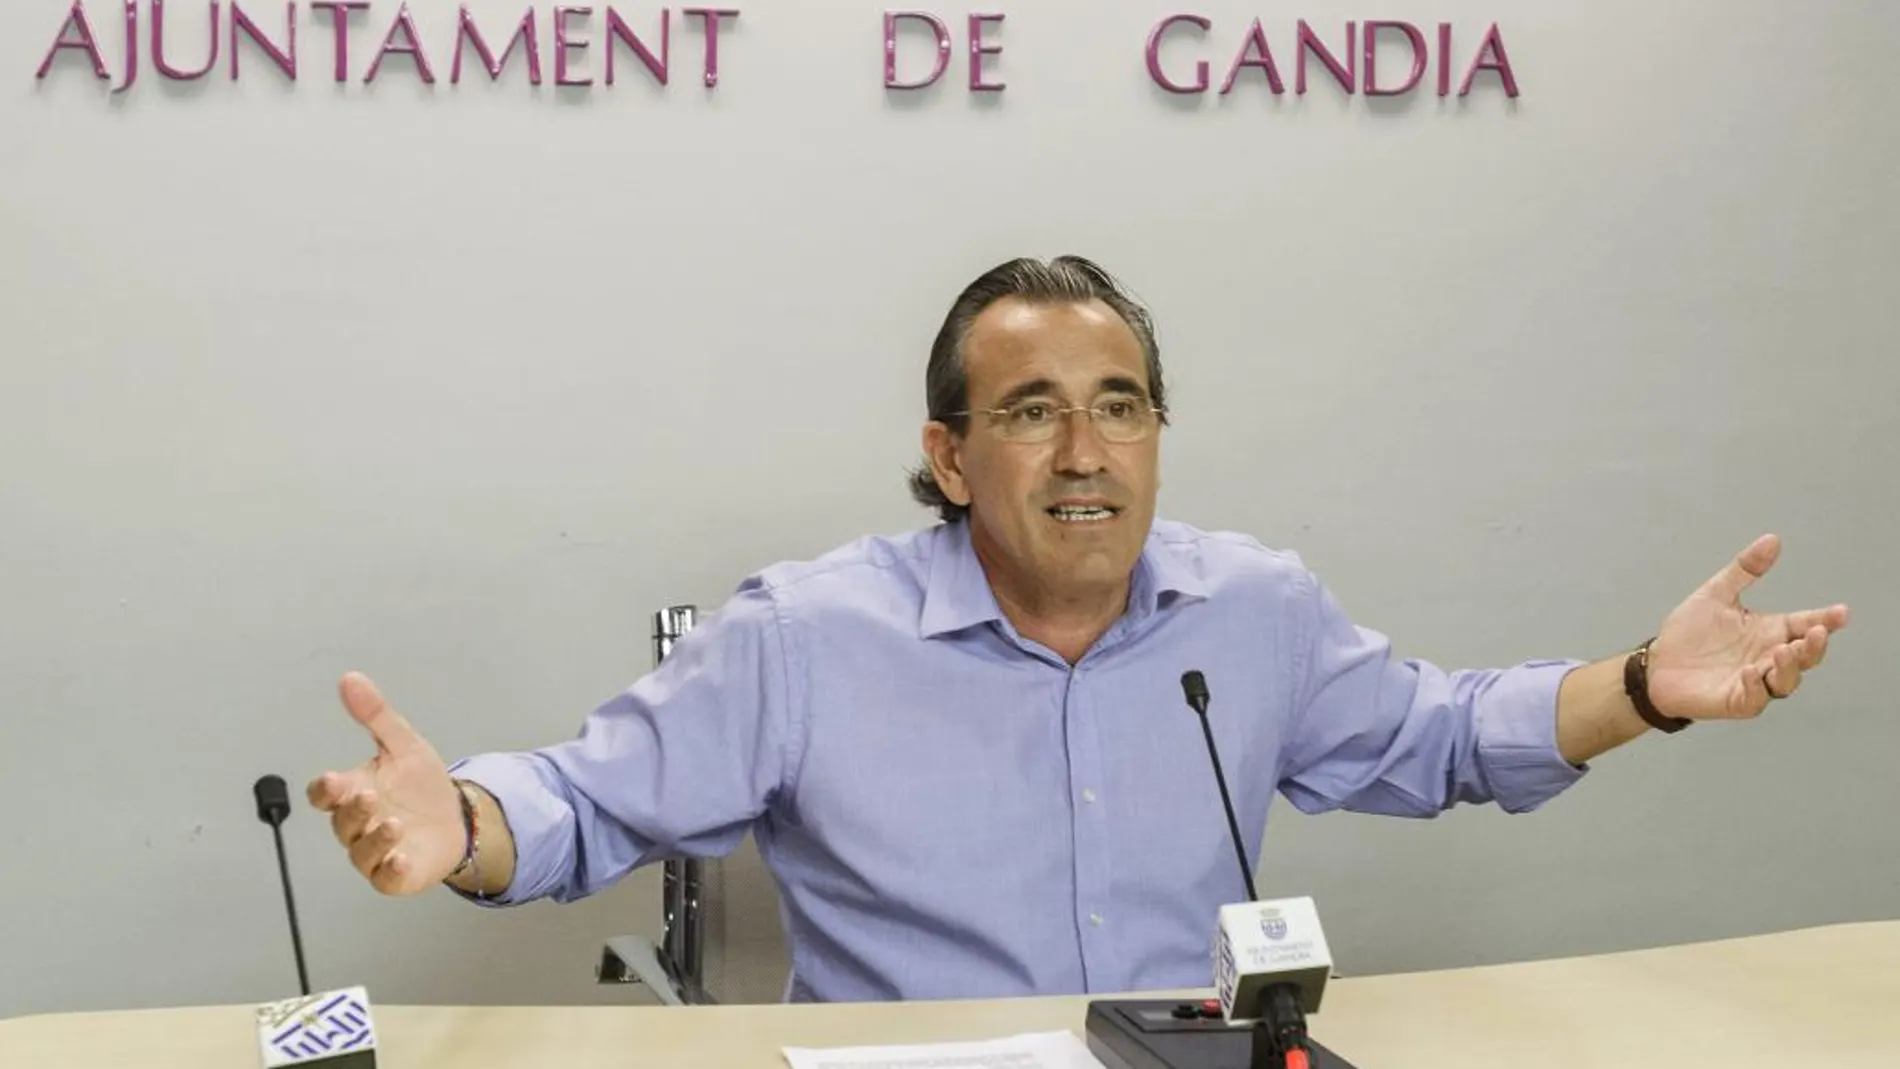 El ex alcalde de Gandía Arturo Torró